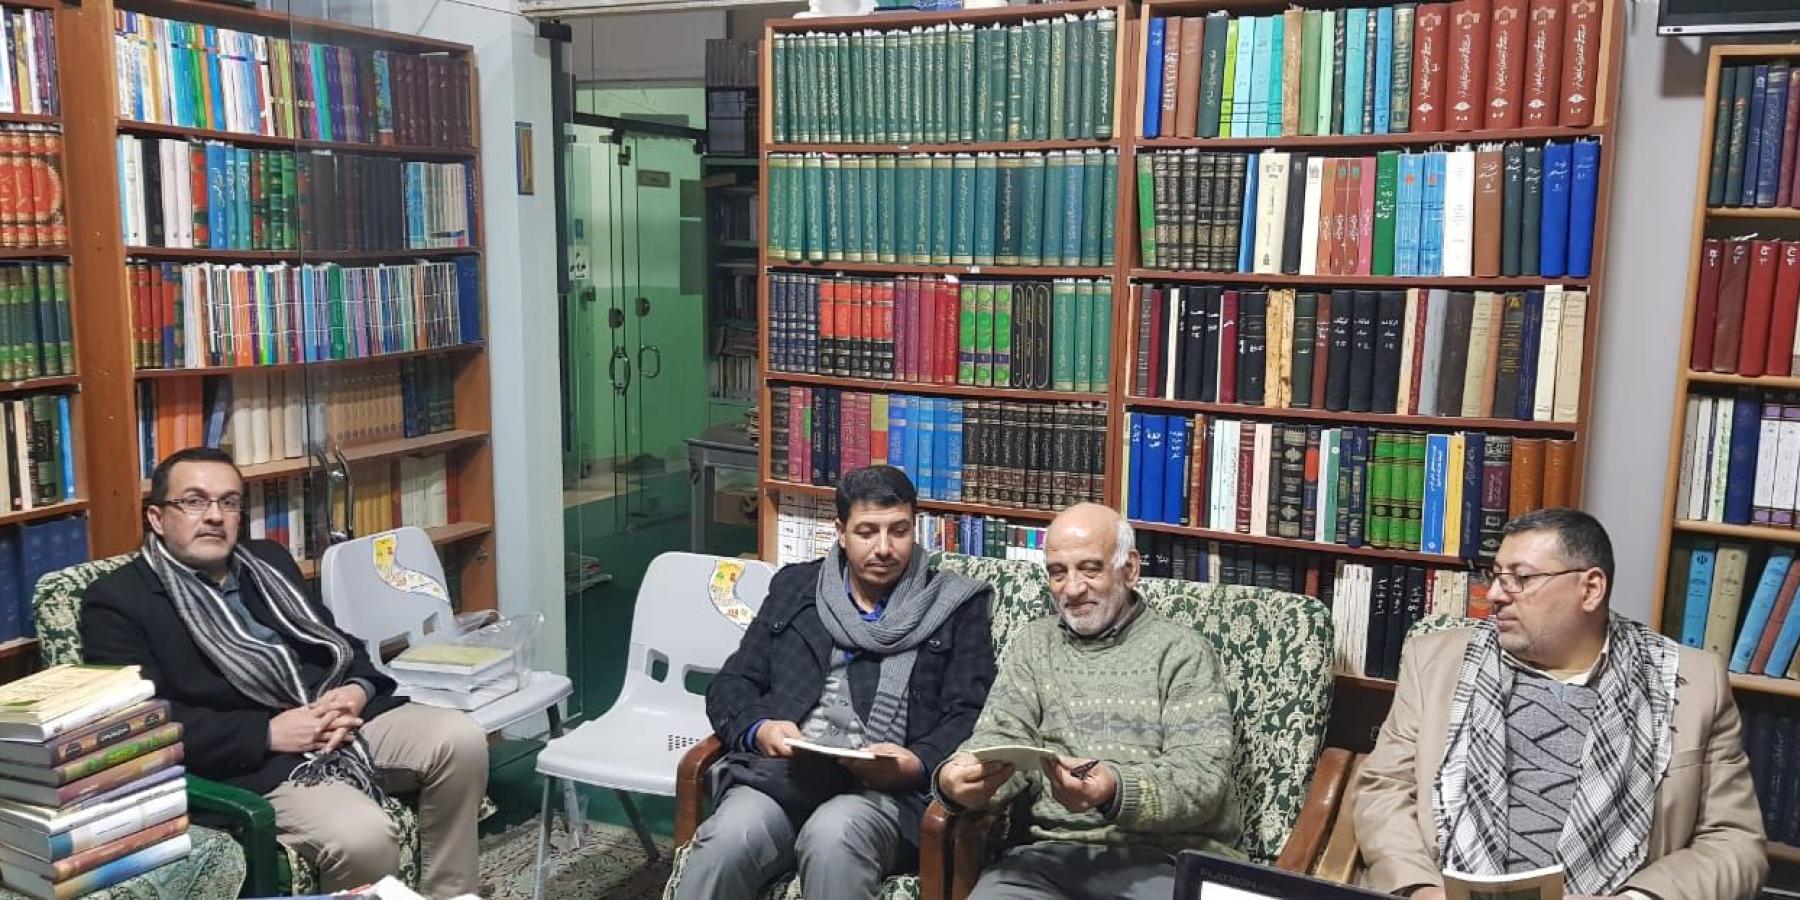 وفد مكتبة الروضة الحيدرية إلى الجمهورية الإسلامية الإيرانية يزور مكتبة أمير المؤمنين (عليه السلام) التخصصية